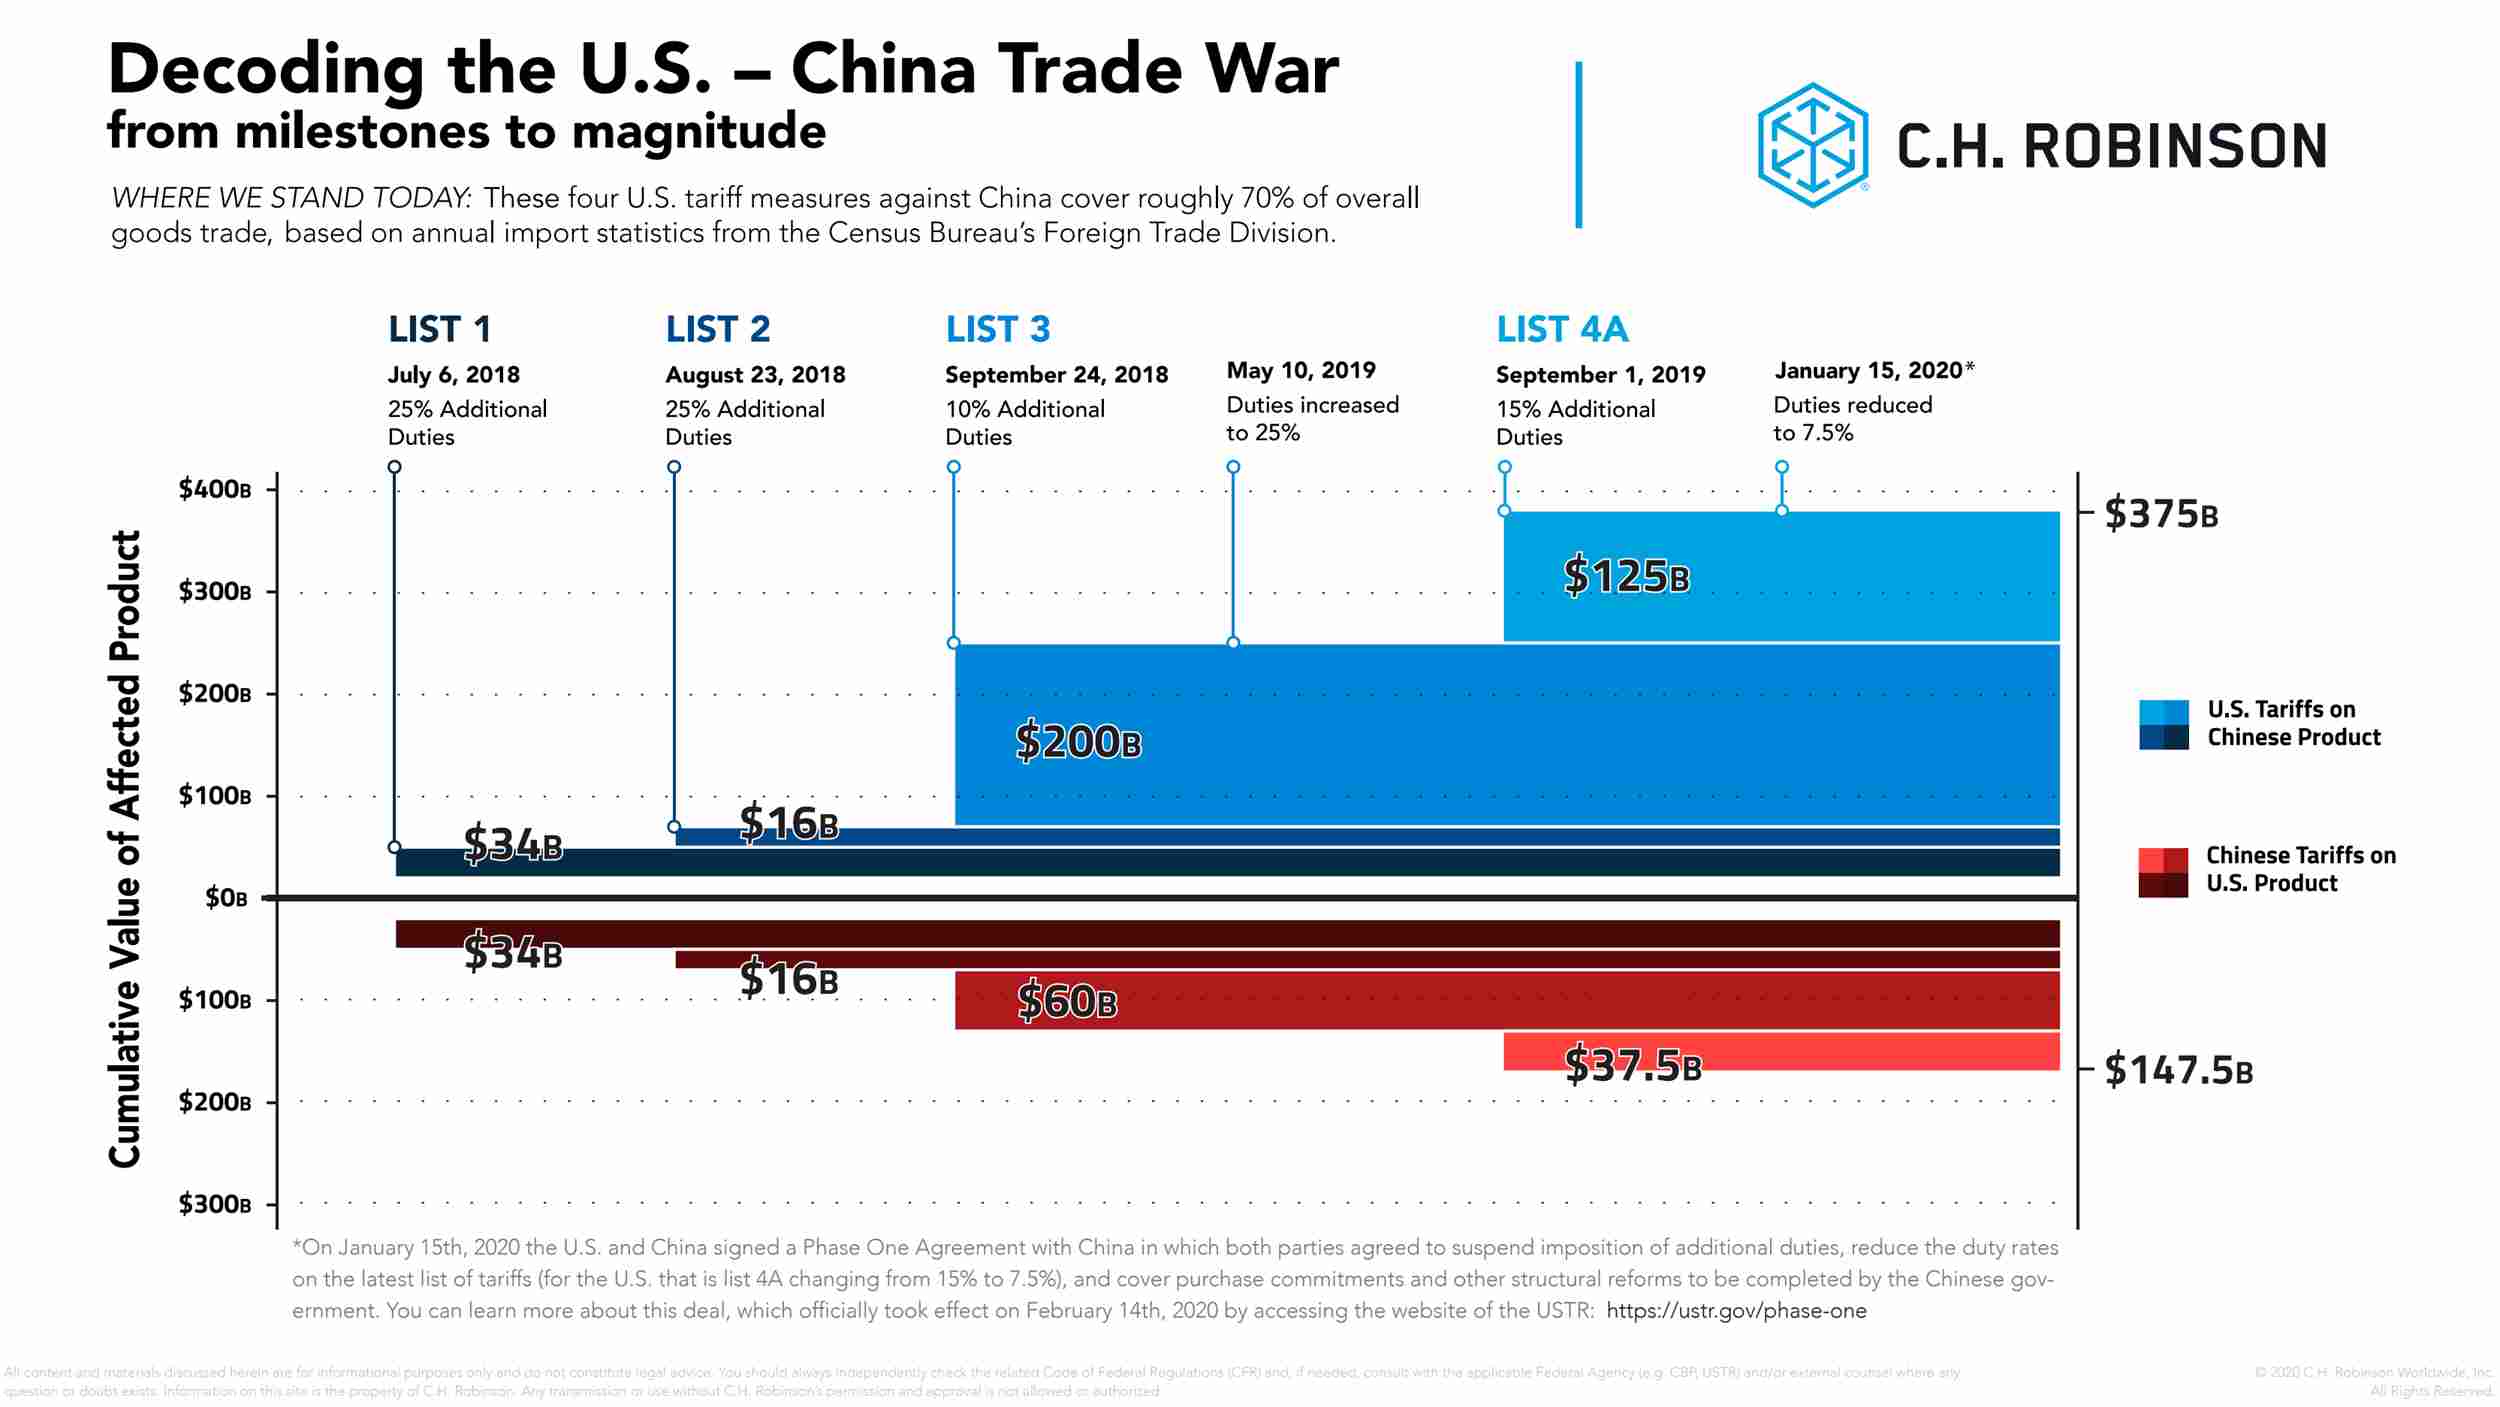 미중 무역 전쟁의 해독을 묘사한 그래프